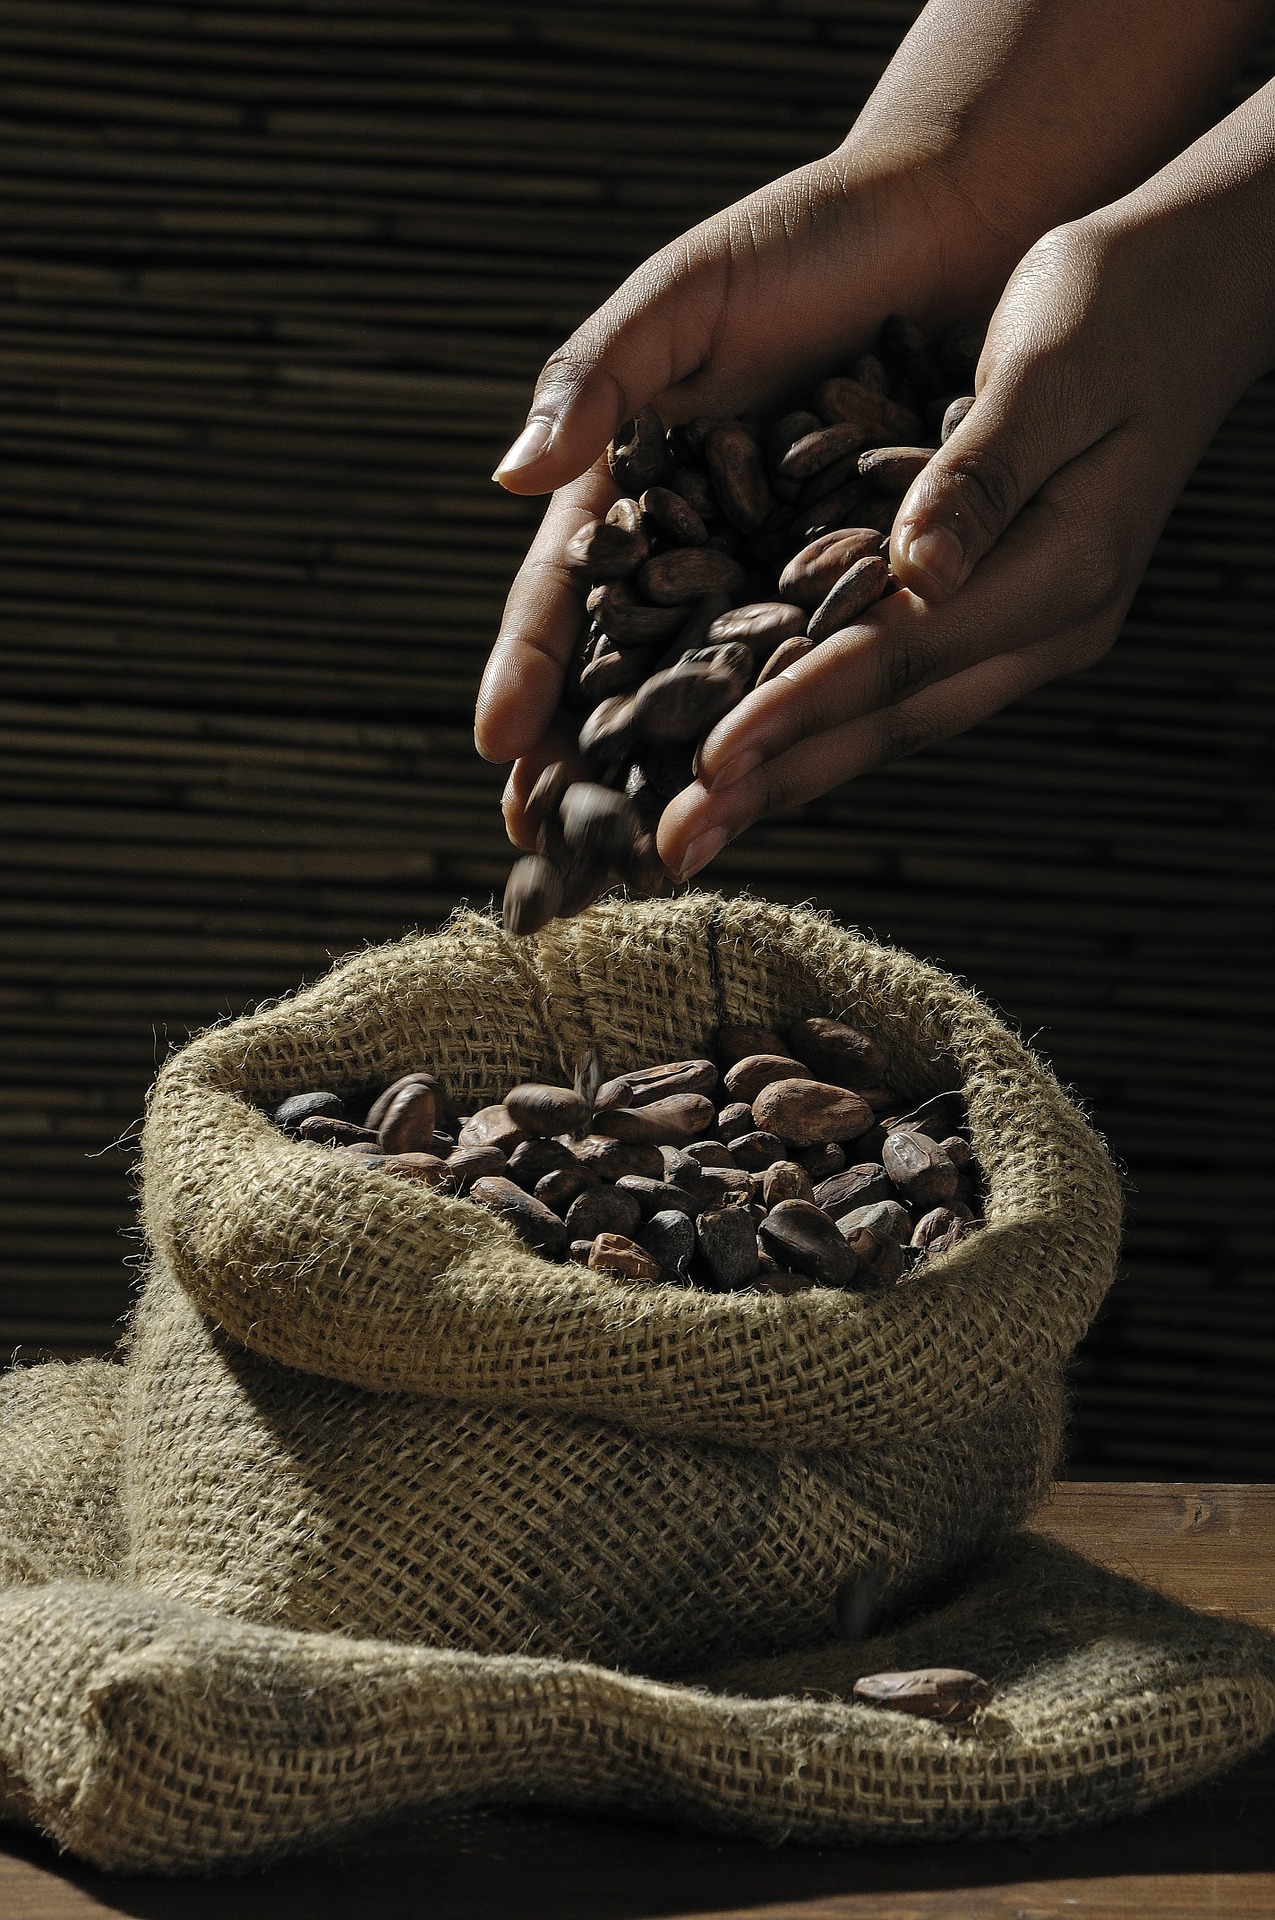 cioccolato caffè chicchi cacao distribuzione GDO adorni sas alimentari